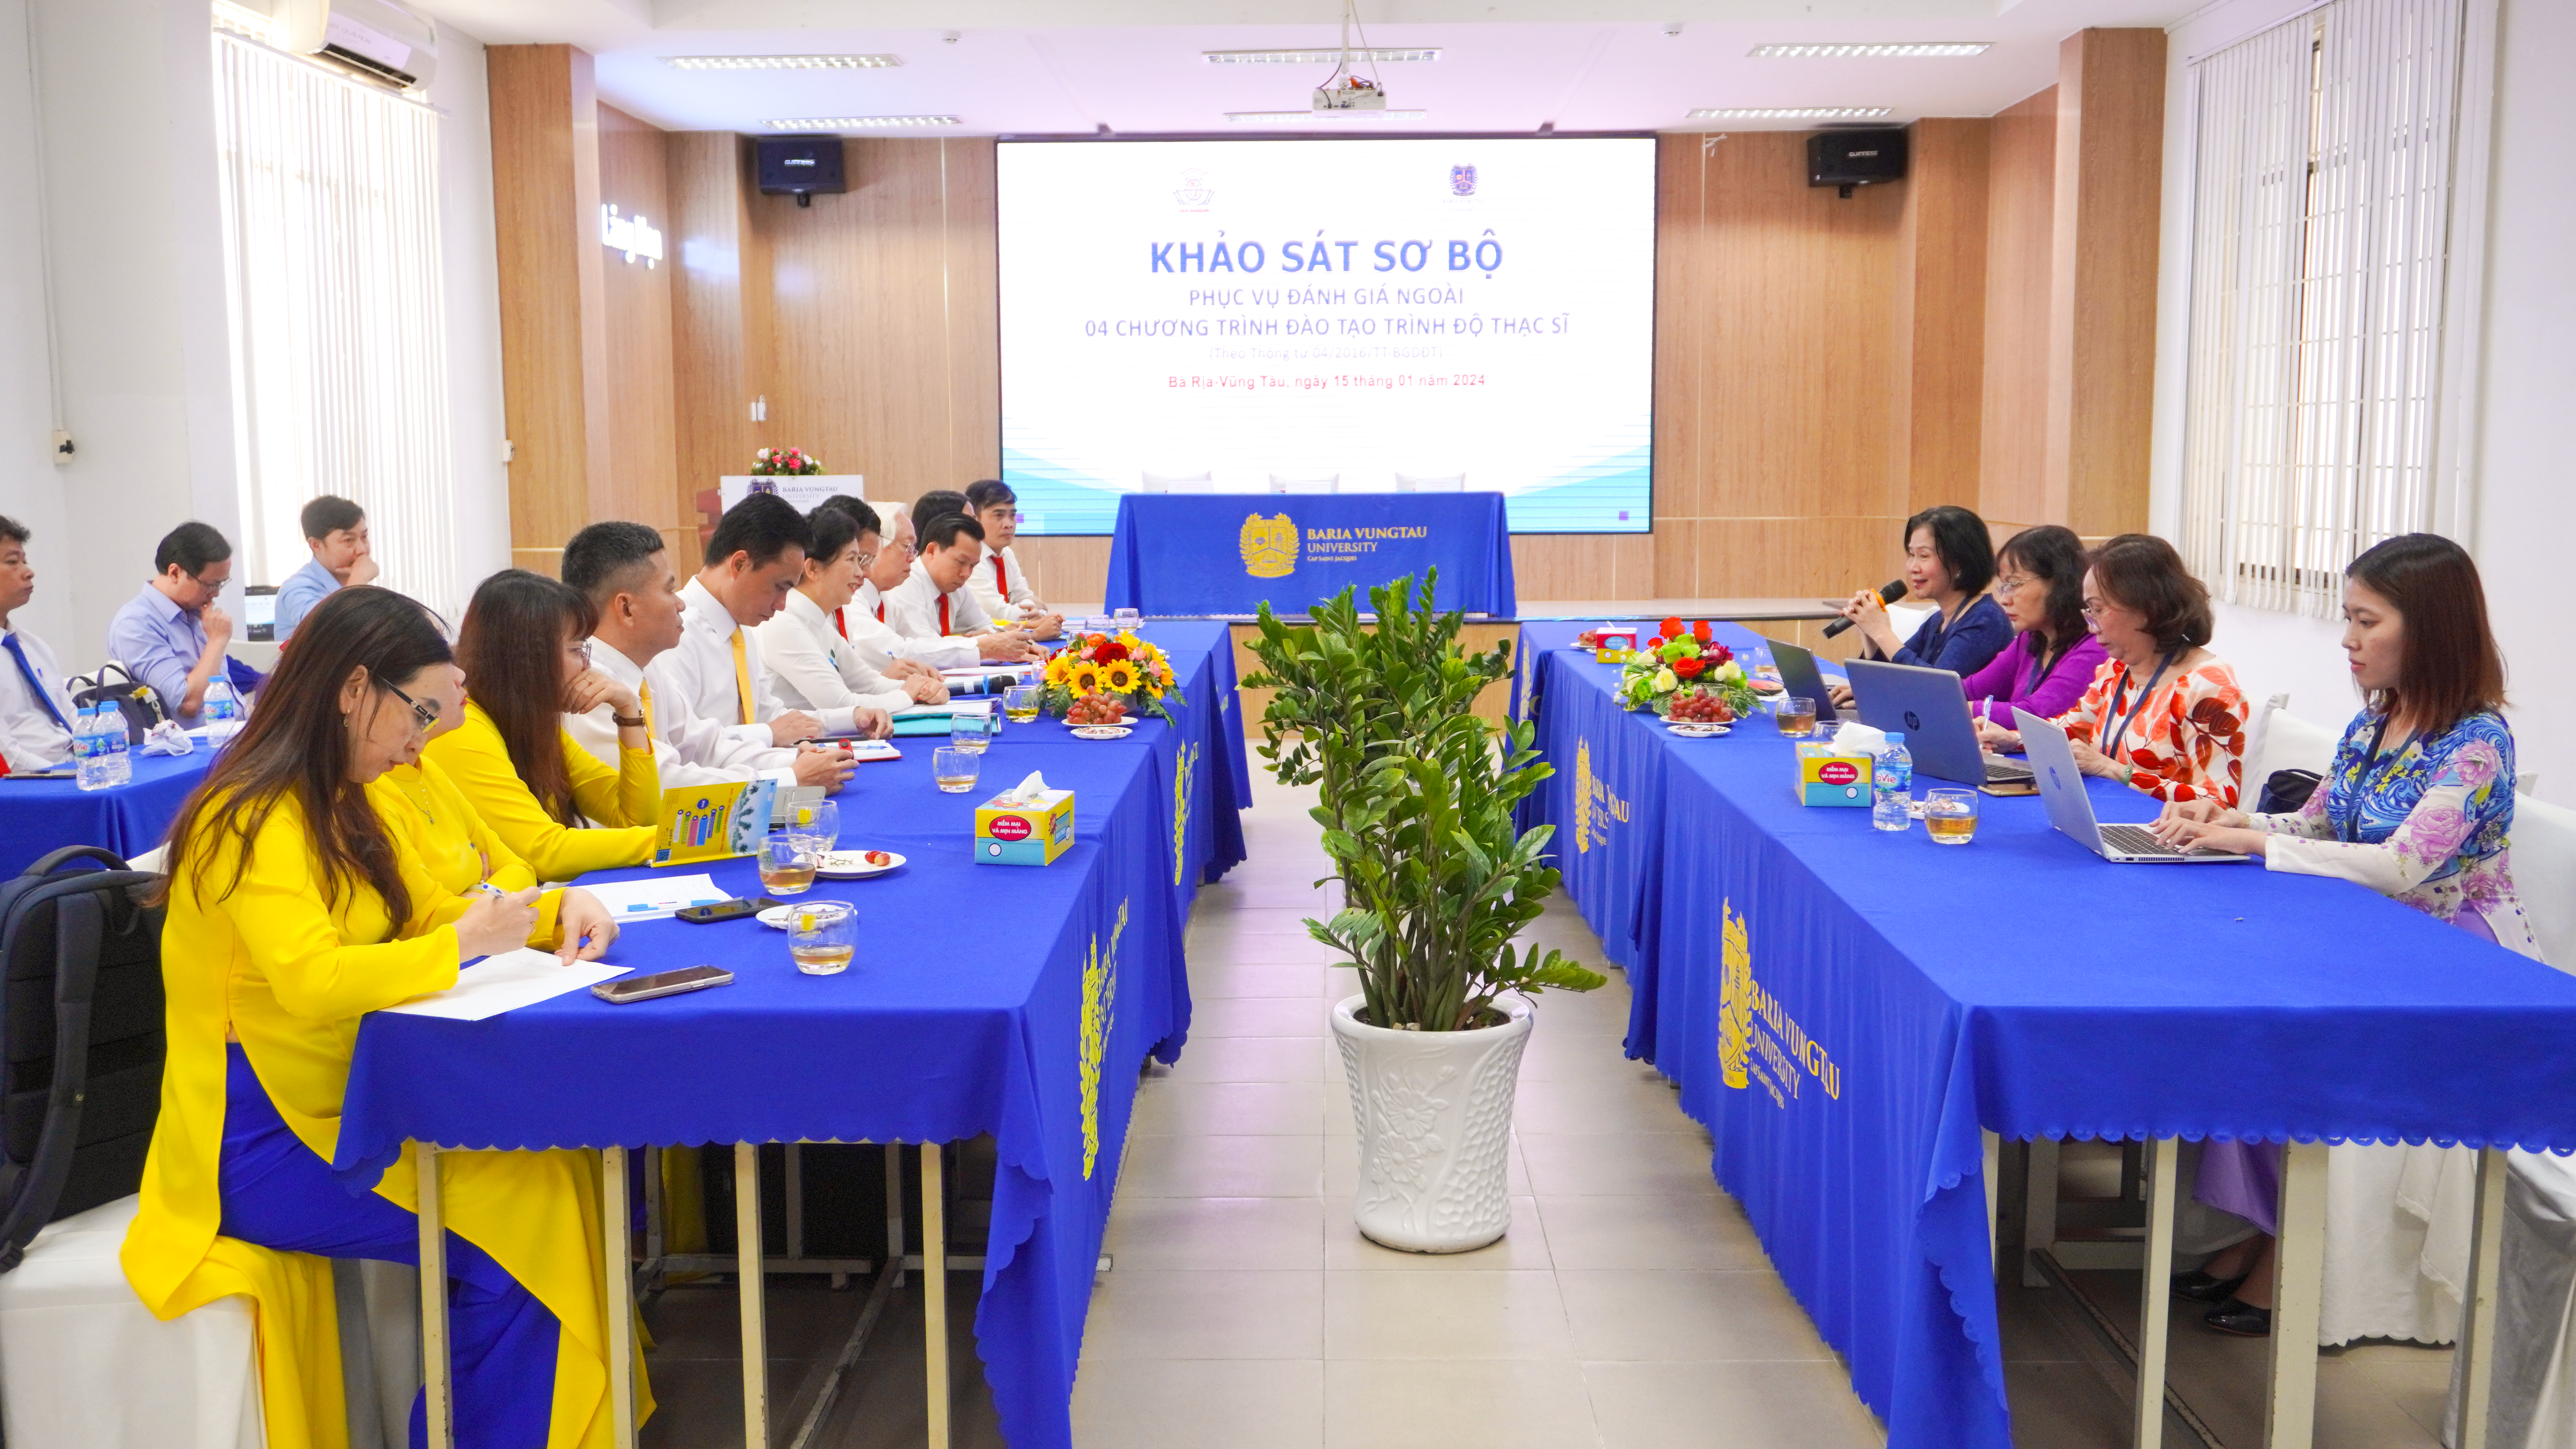 Khảo sát sơ bộ phục vụ đánh giá ngoài 04 chương trình đào tạo trình độ thạc sĩ tại Trường Đại học Bà Rịa – Vũng Tàu